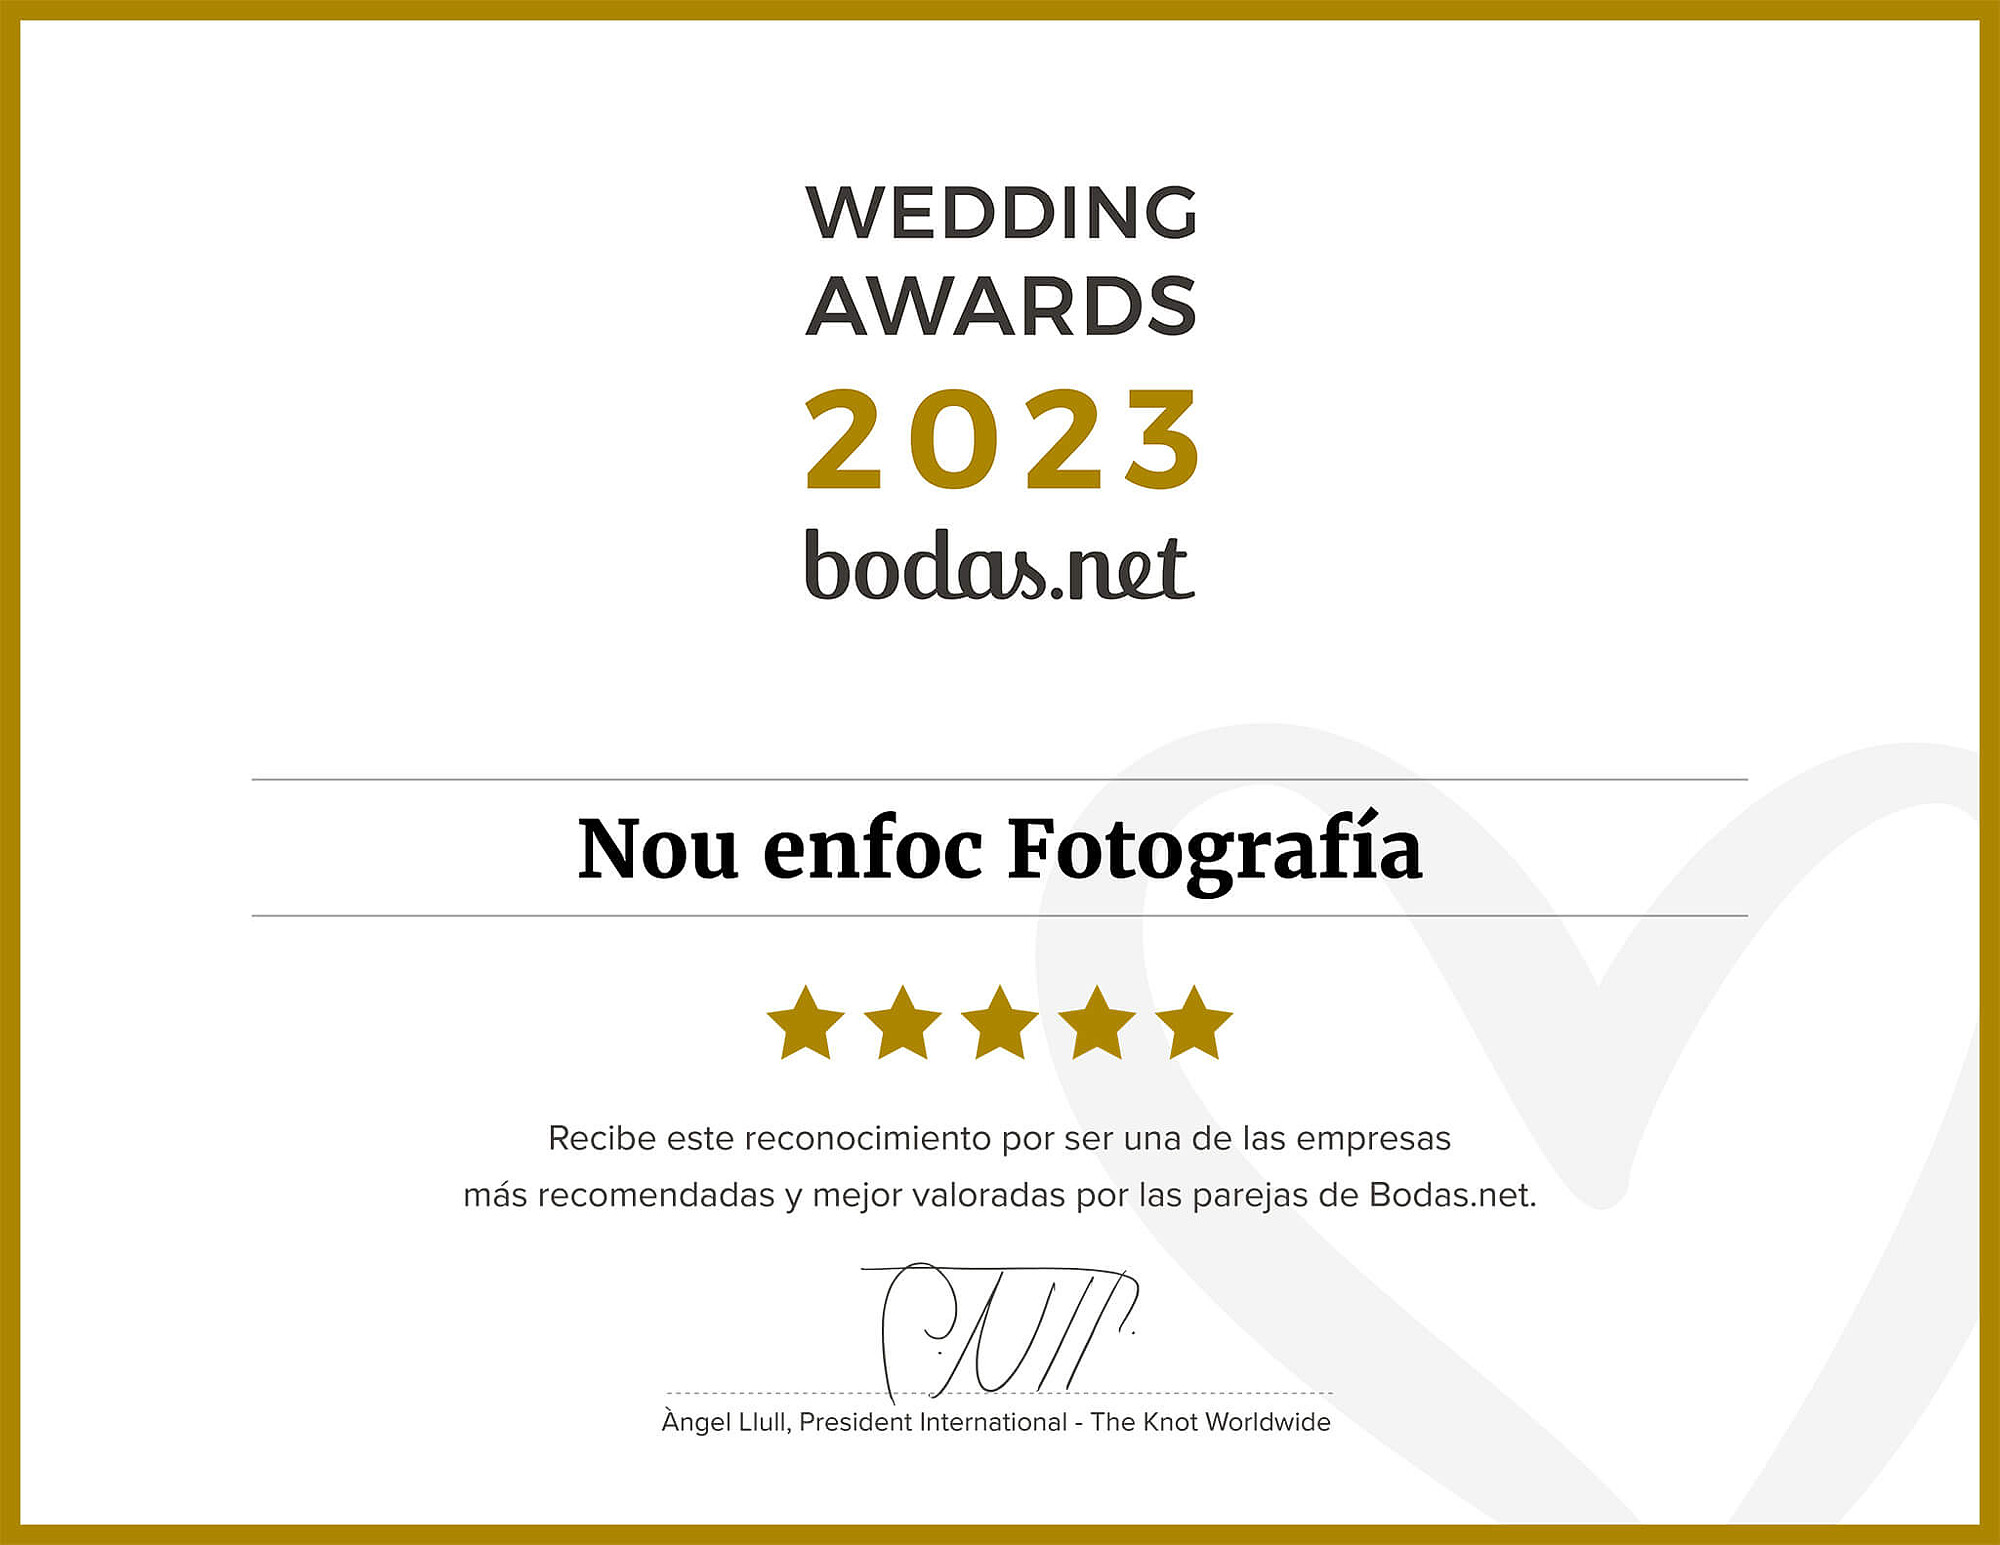 Premi millors fotògrafs de casament per bodasnet com a fotógrafs recomanats.